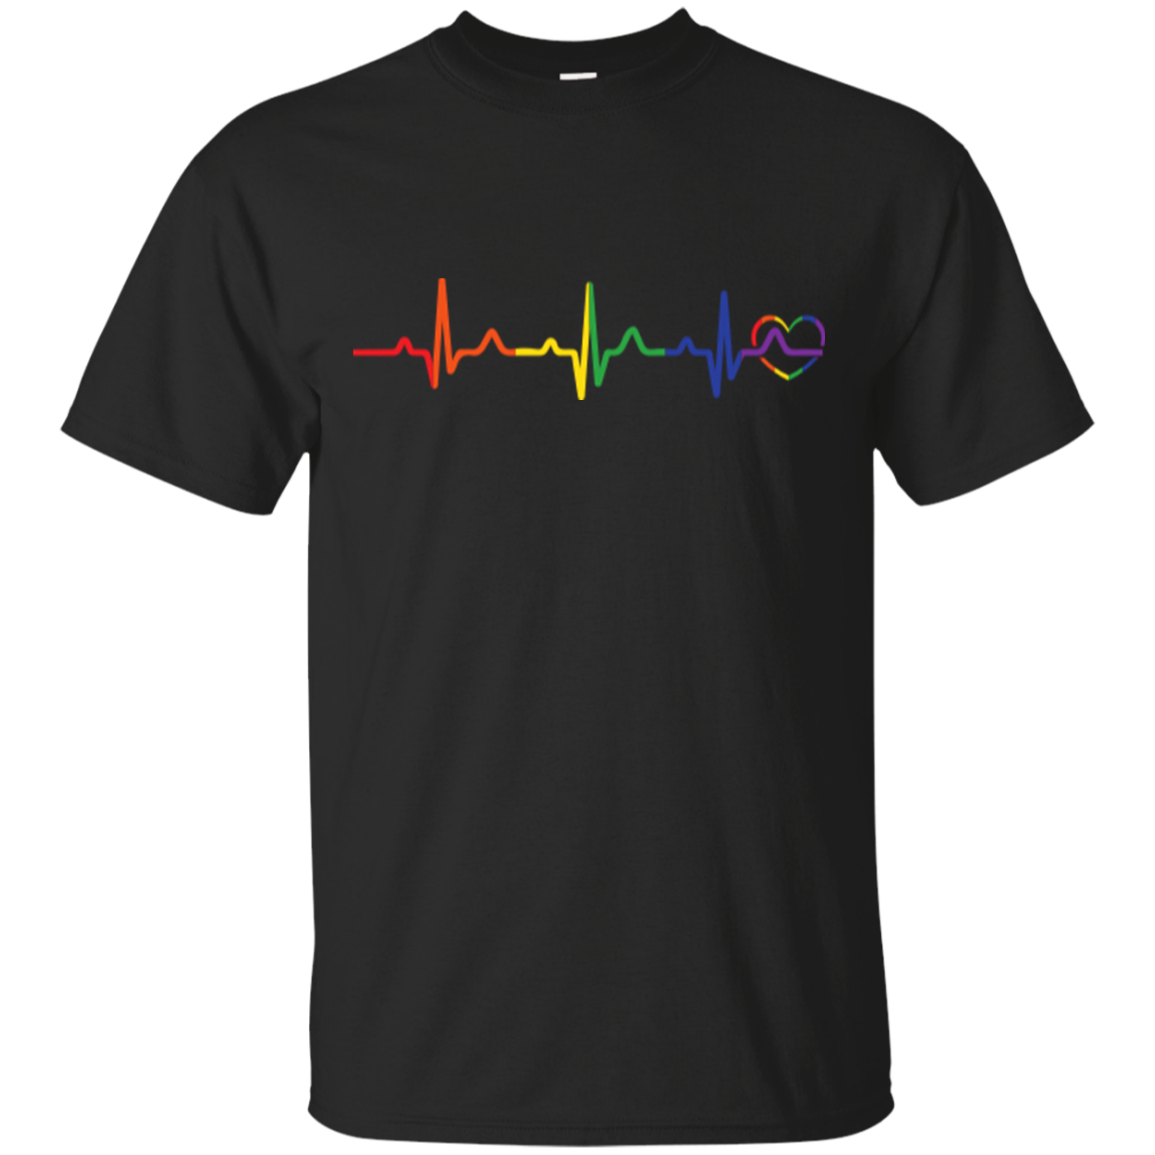 Myprideshop - Exclusive LGBT Pride Store – MYPRIDESHOP